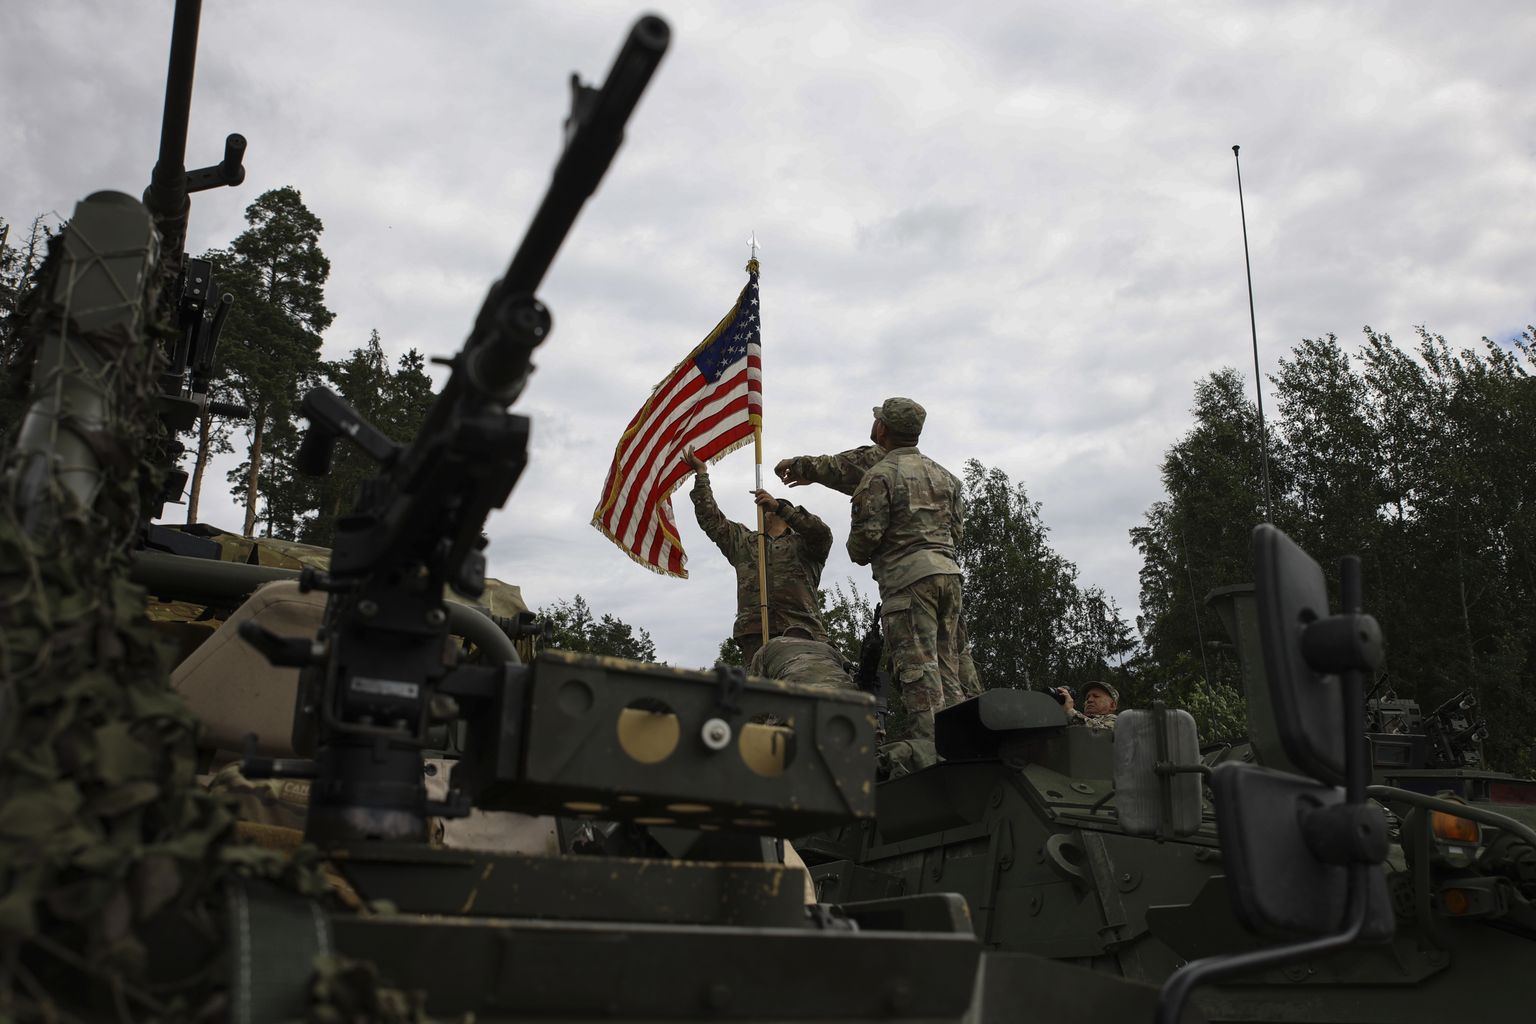 Ameerika sõdurid kinnitamas soomusmasinale USA lippu möödunud aastal Szypliszki lähistel.